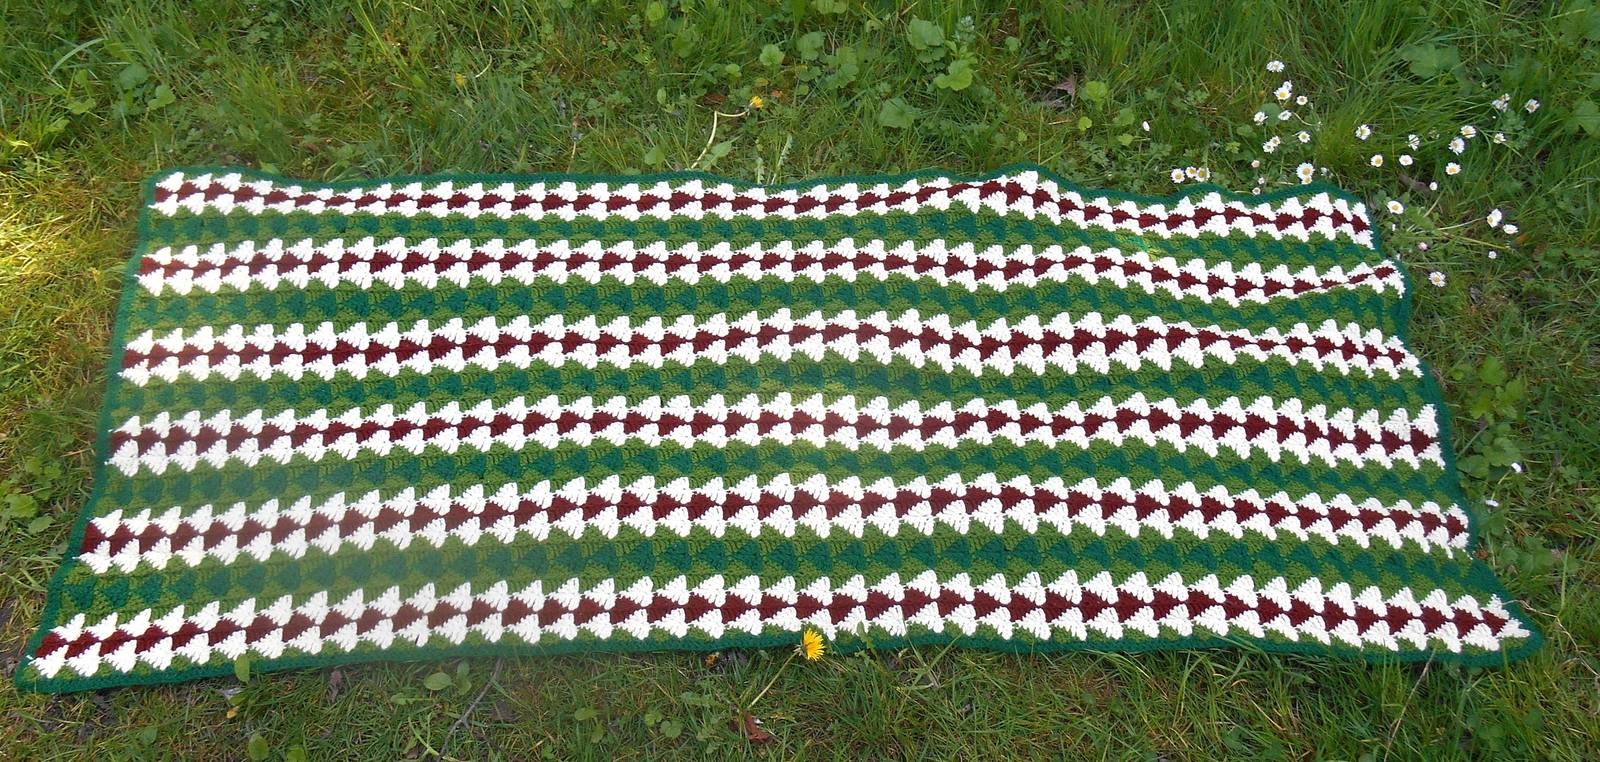 Vintage Afghan Blanket Triangles in Greens, Rust Brown & Cream Crochet Woodland  - $44.00